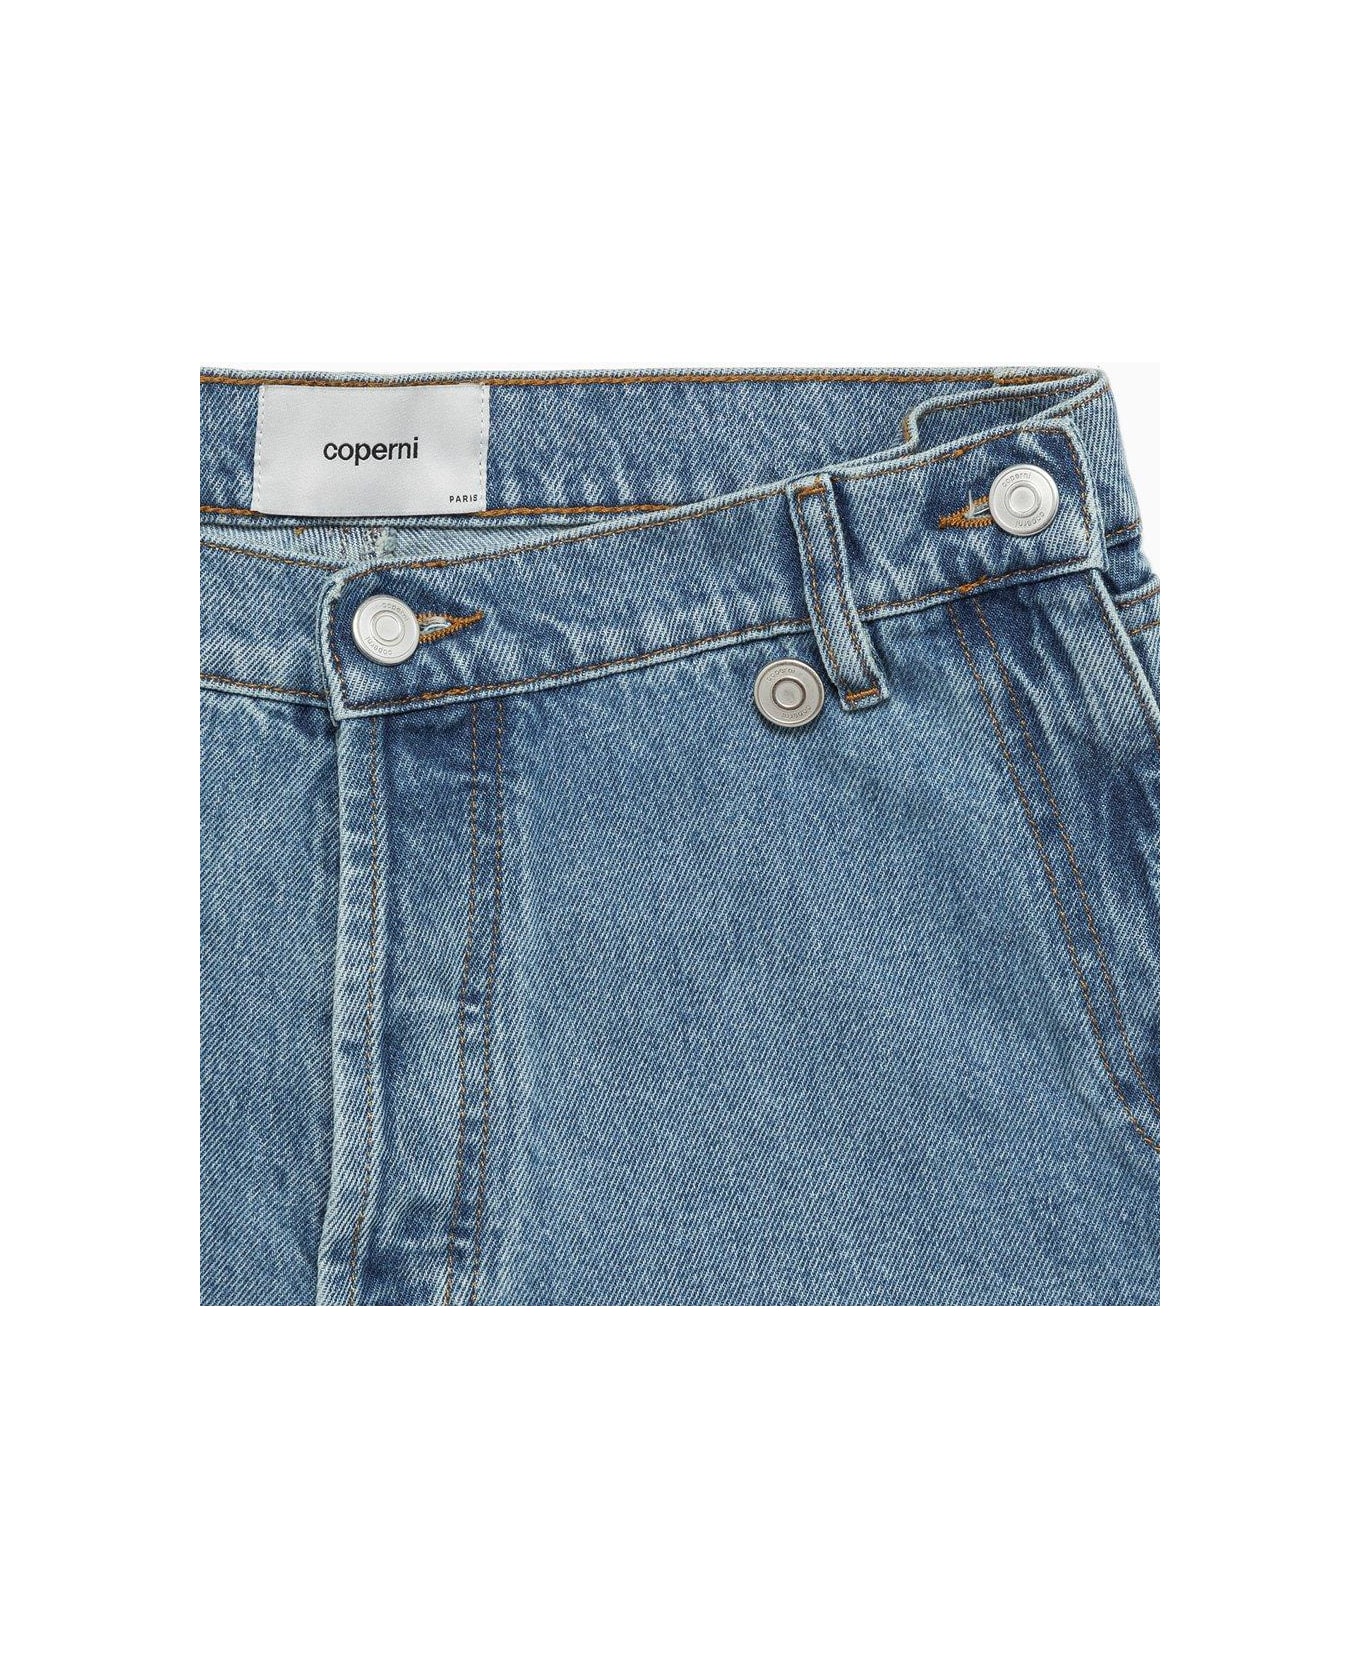 Coperni Button Detailed Denim Shorts - BLUE ショートパンツ